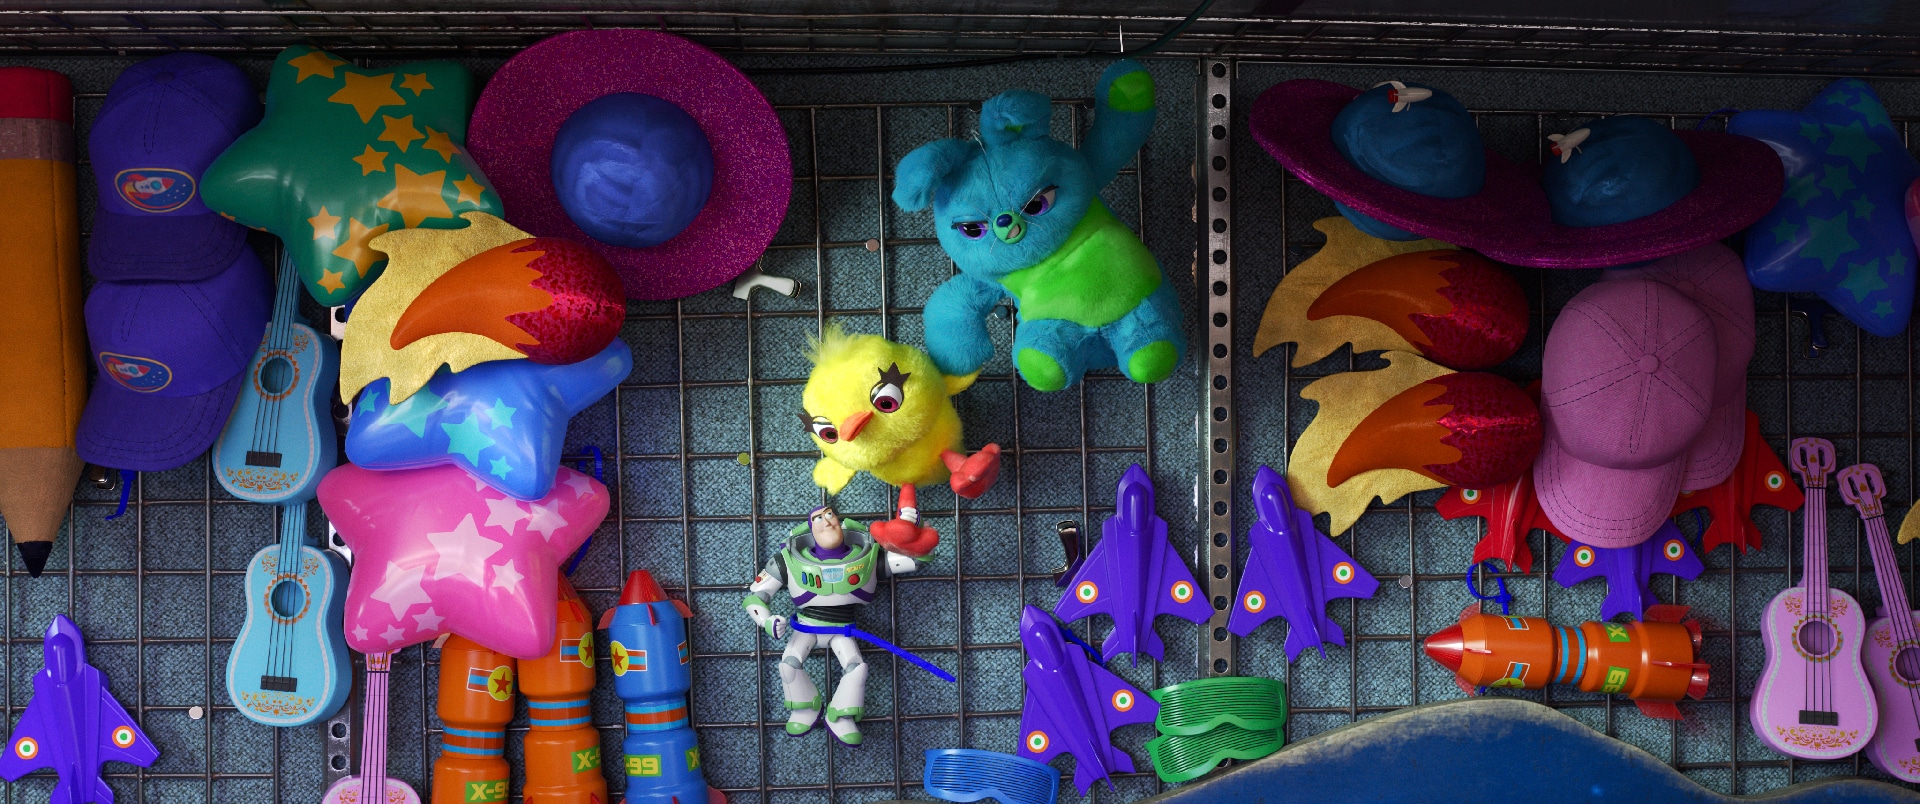 Toy Story 4: svelato il cast vocale italiano del film Disney Pixar